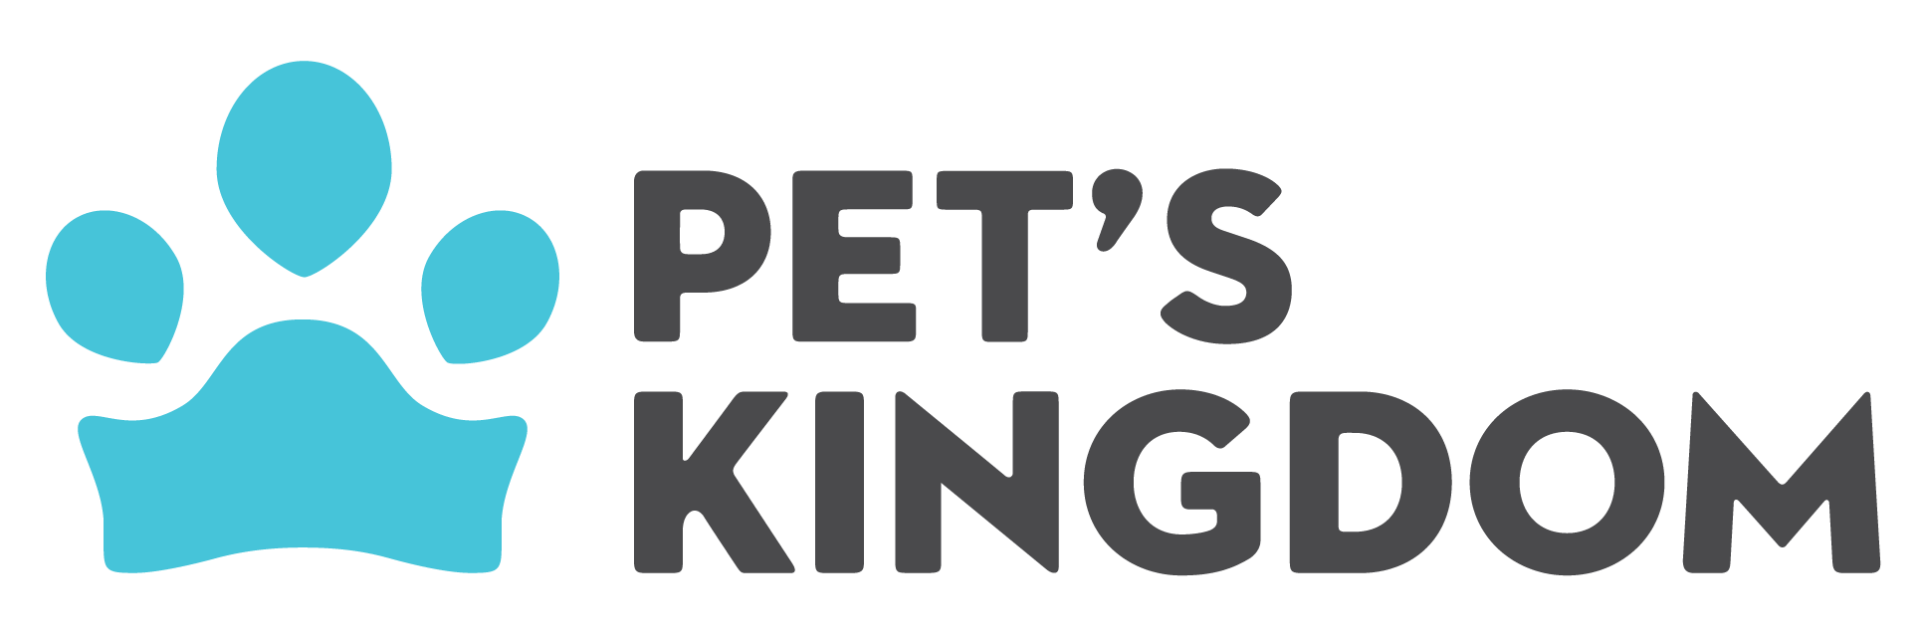 Pet's Kingdom